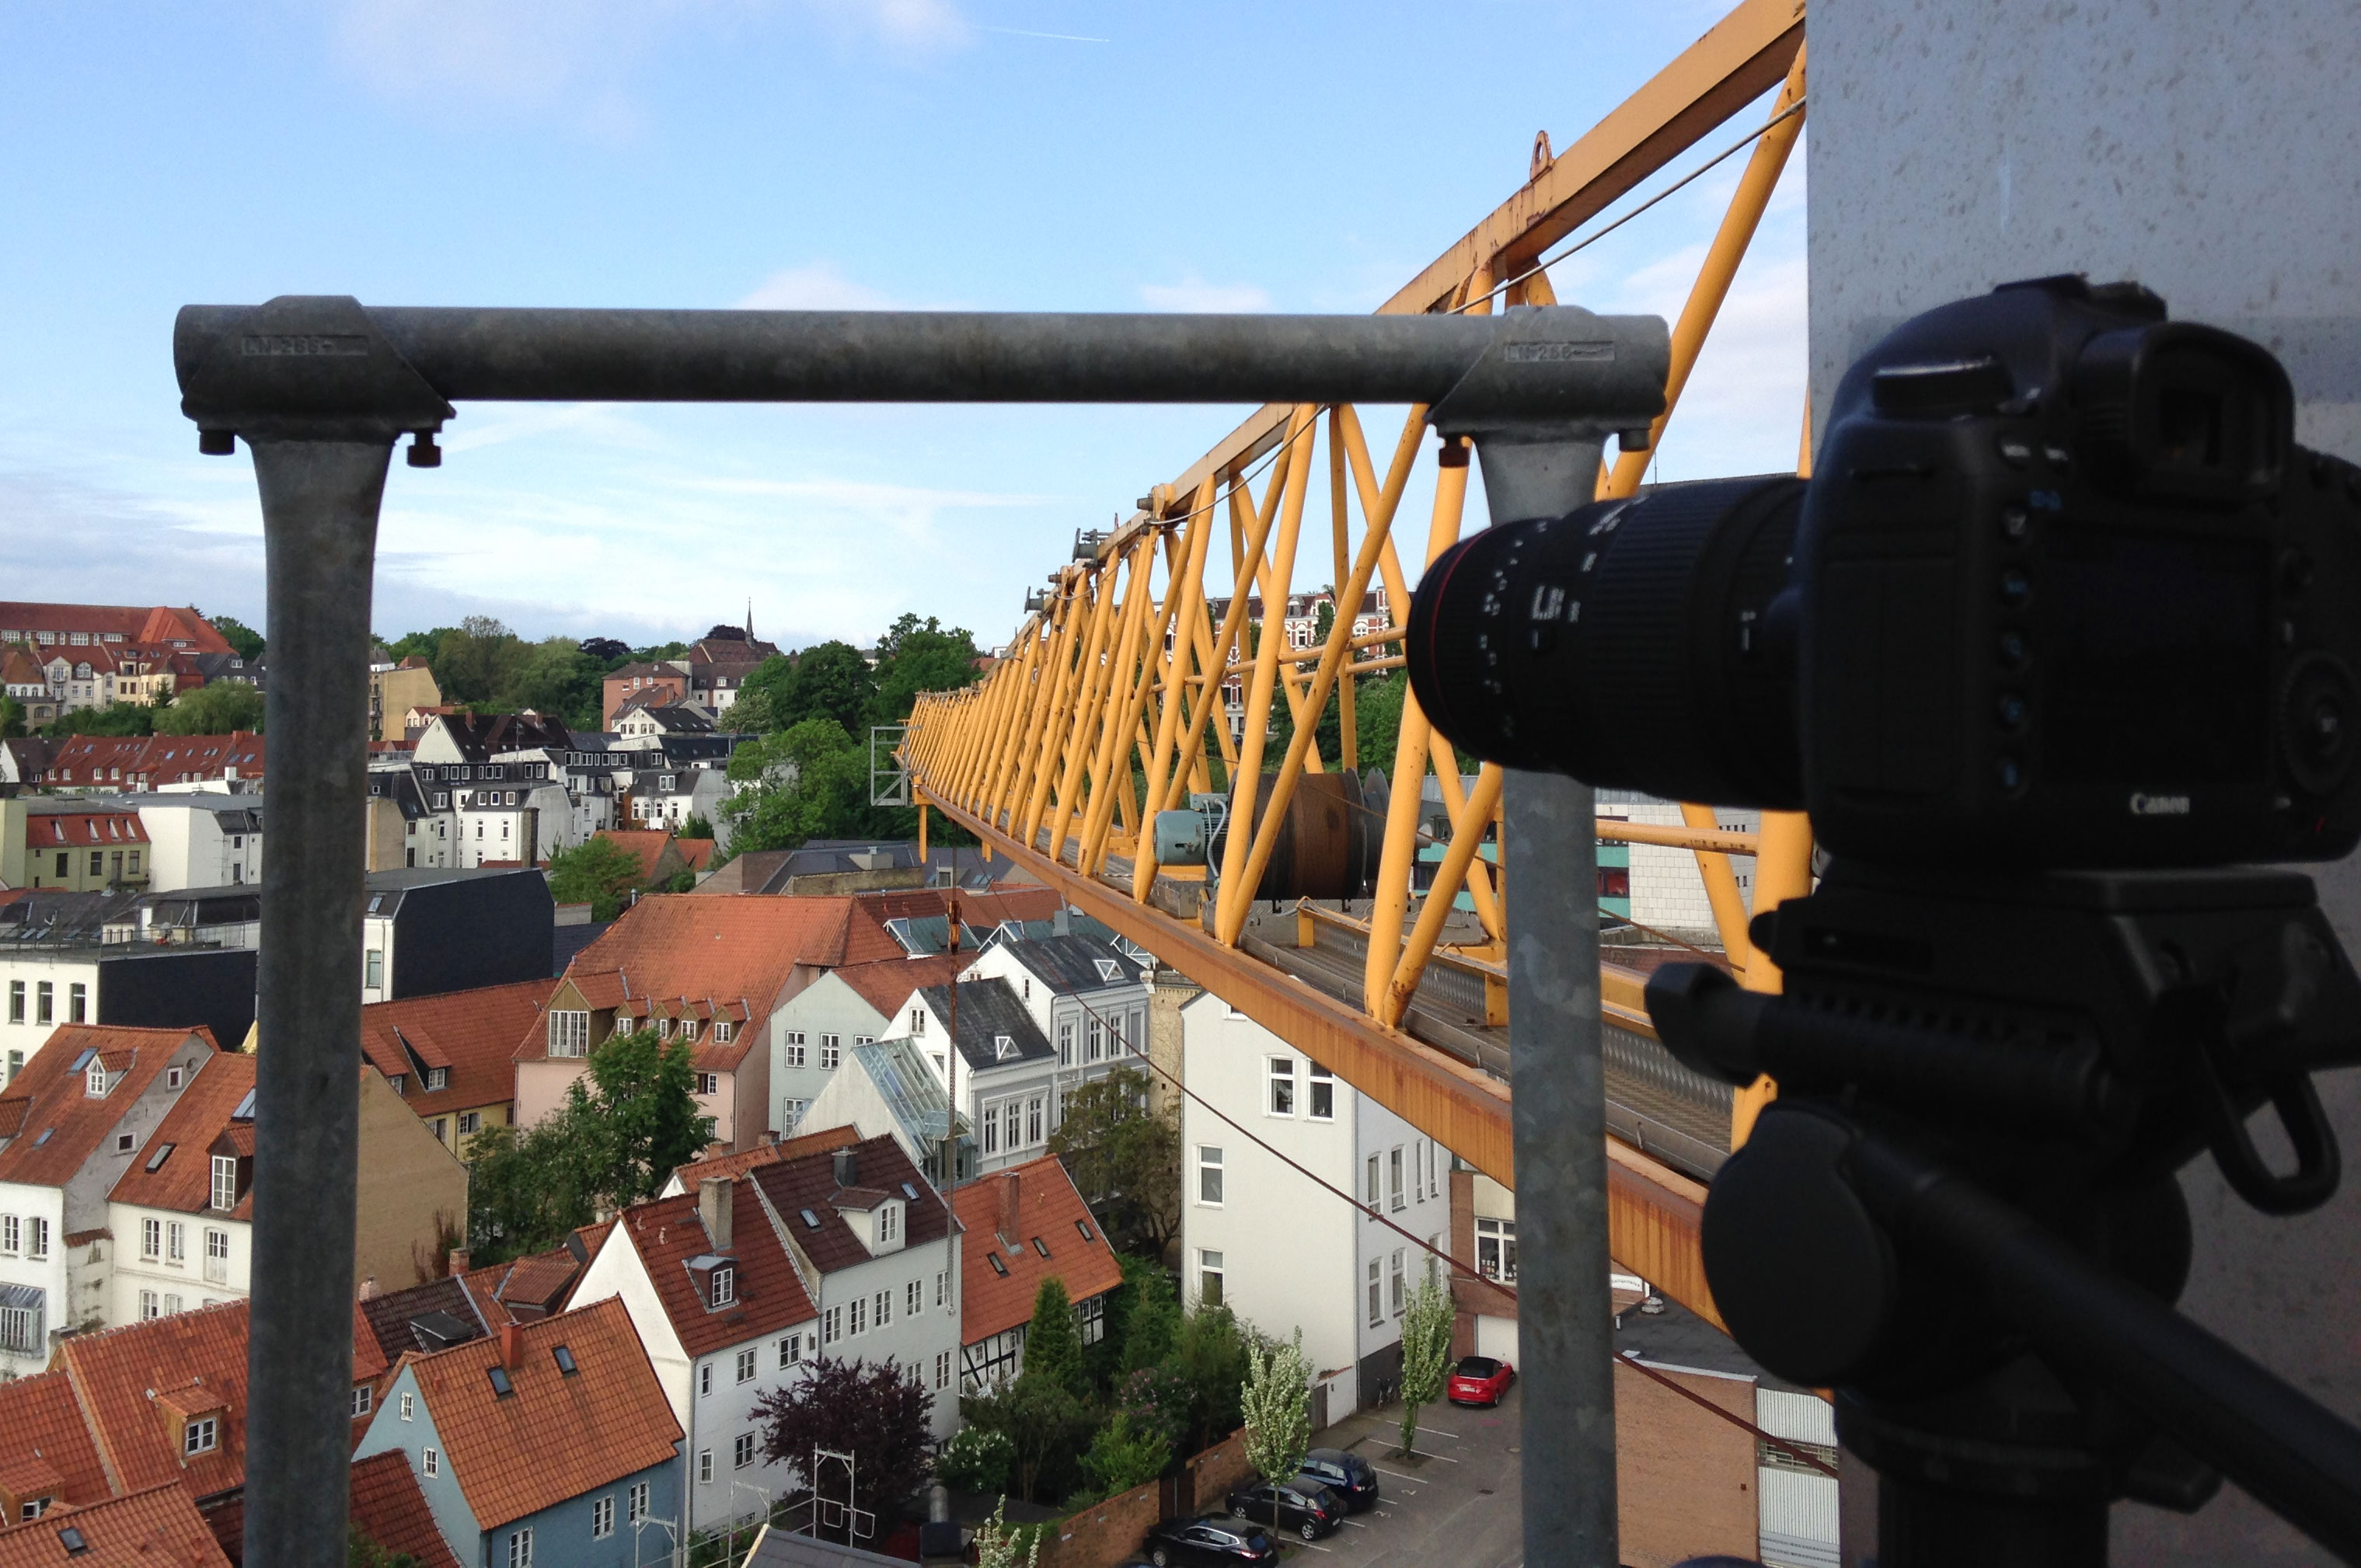 Kamera auf Stativ fotografiert von einem Kran aus Häuserdächer.